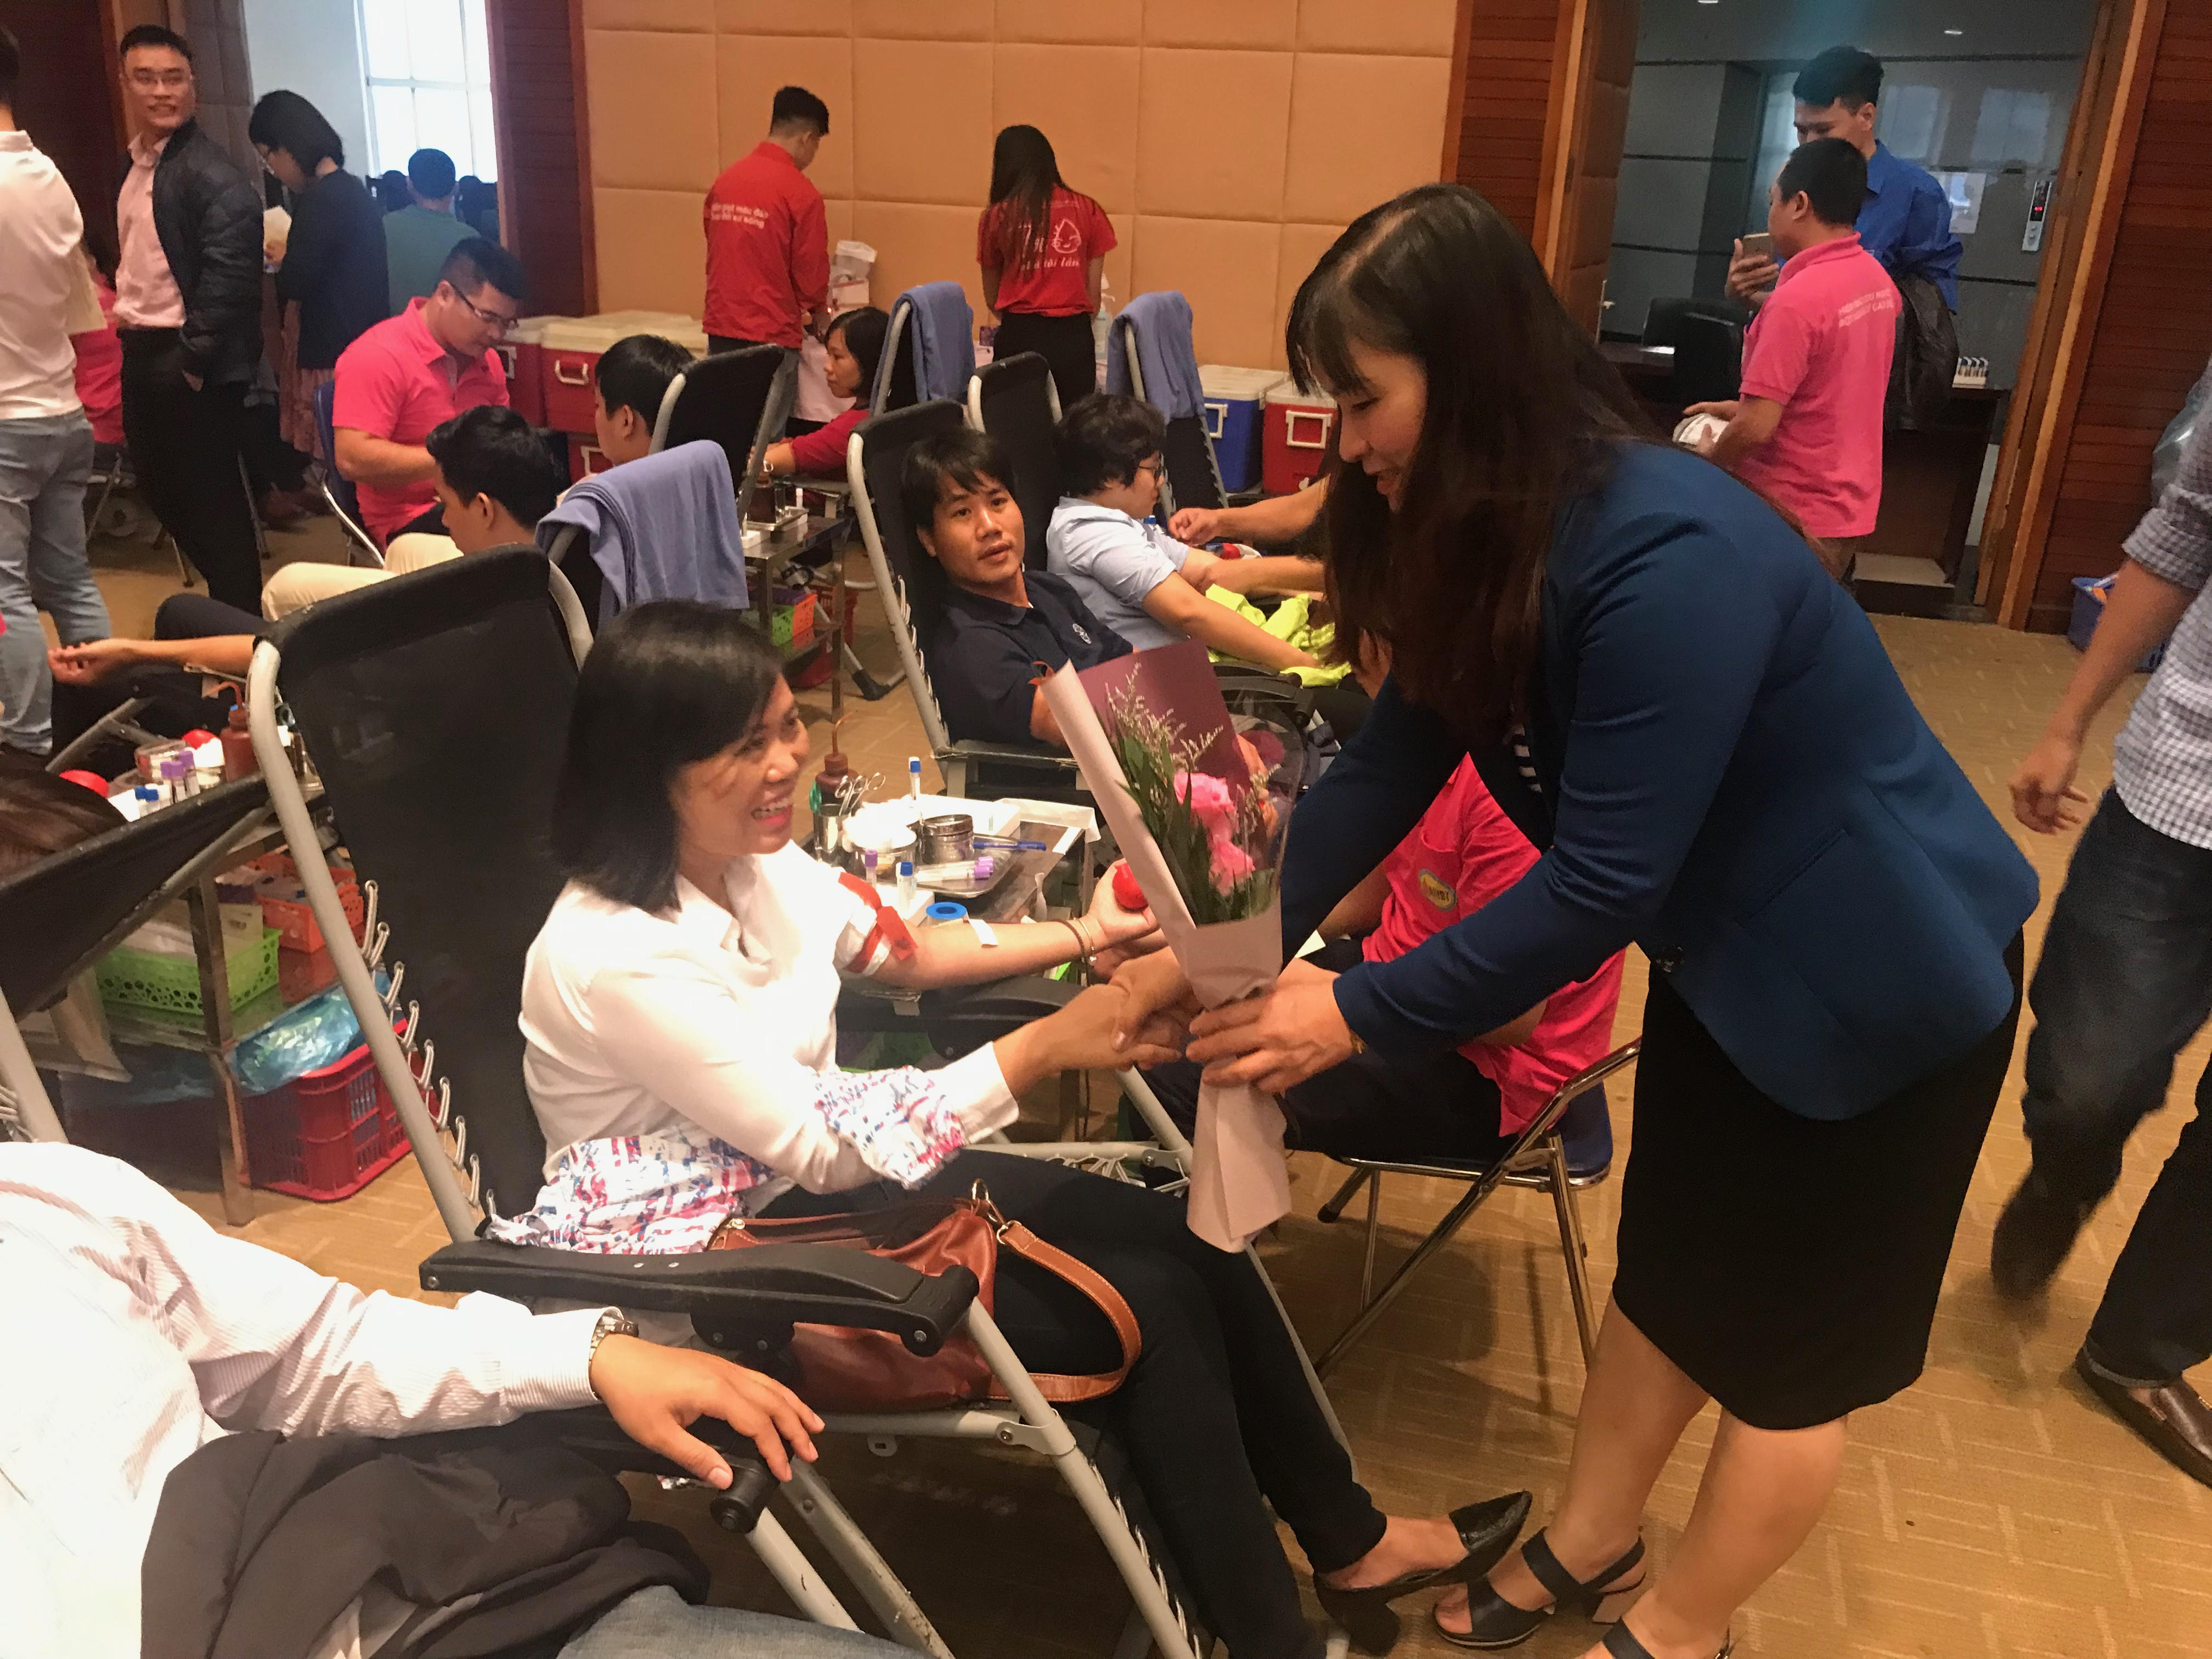 Đồng chí Nguyễn Thị Tiếp, Ủy viên Ban Thường vụ, Trưởng Ban Dân vận Đảng ủy Khối tặng hoa động viên các bạn đoàn viên thanh niên tham gia hiến máu